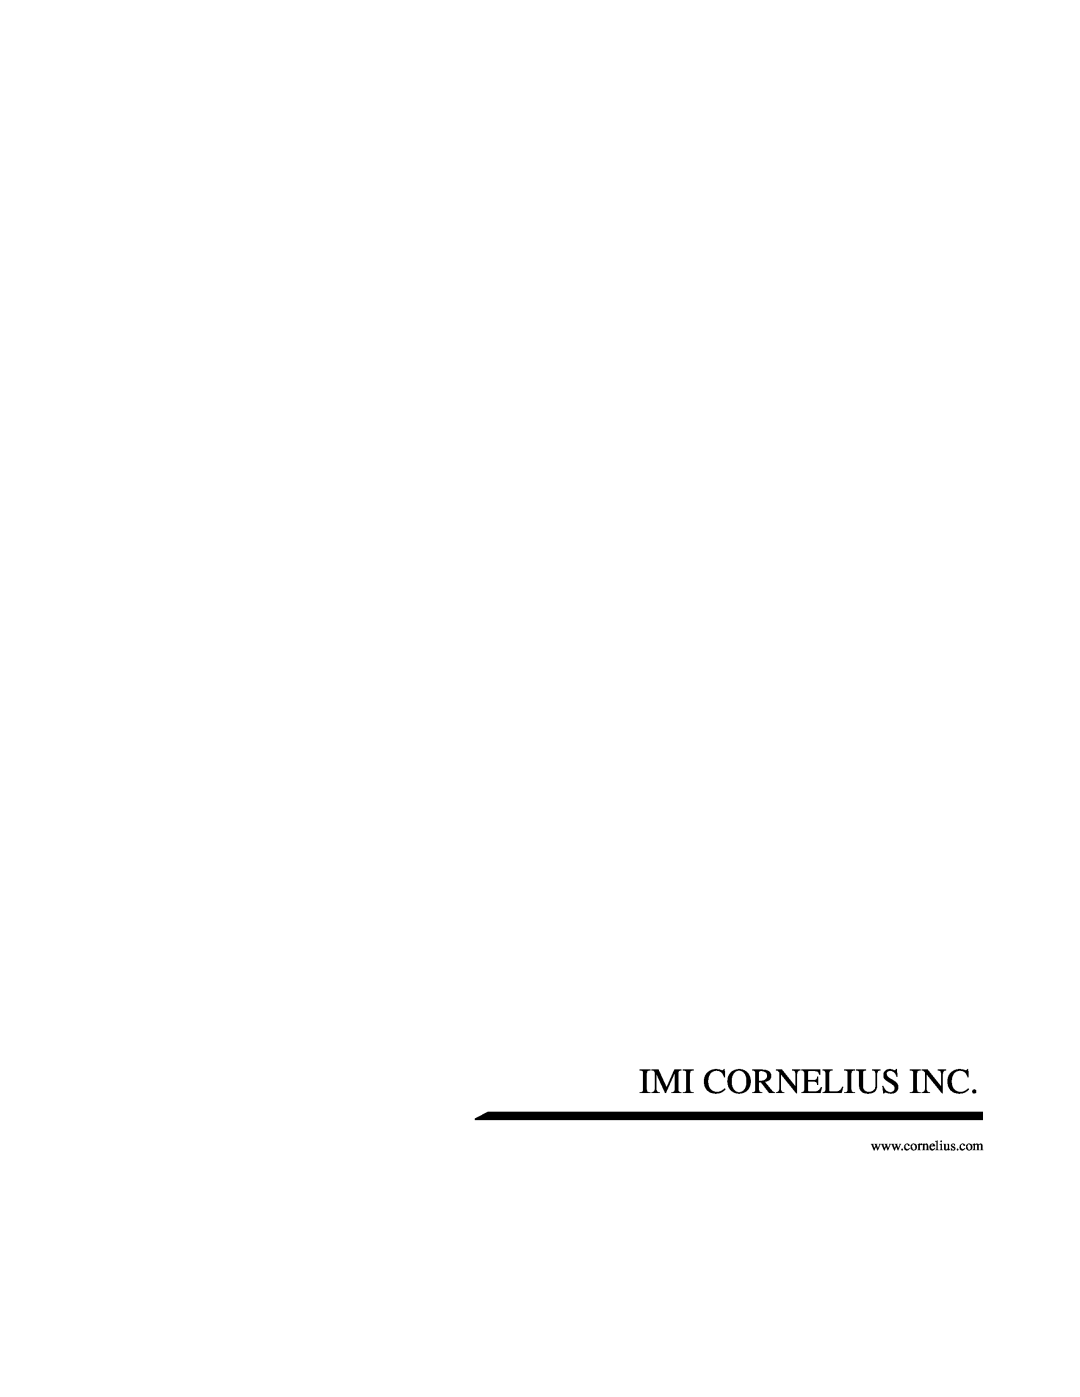 Cornelius TRIAD-150 manual Imi Cornelius Inc 